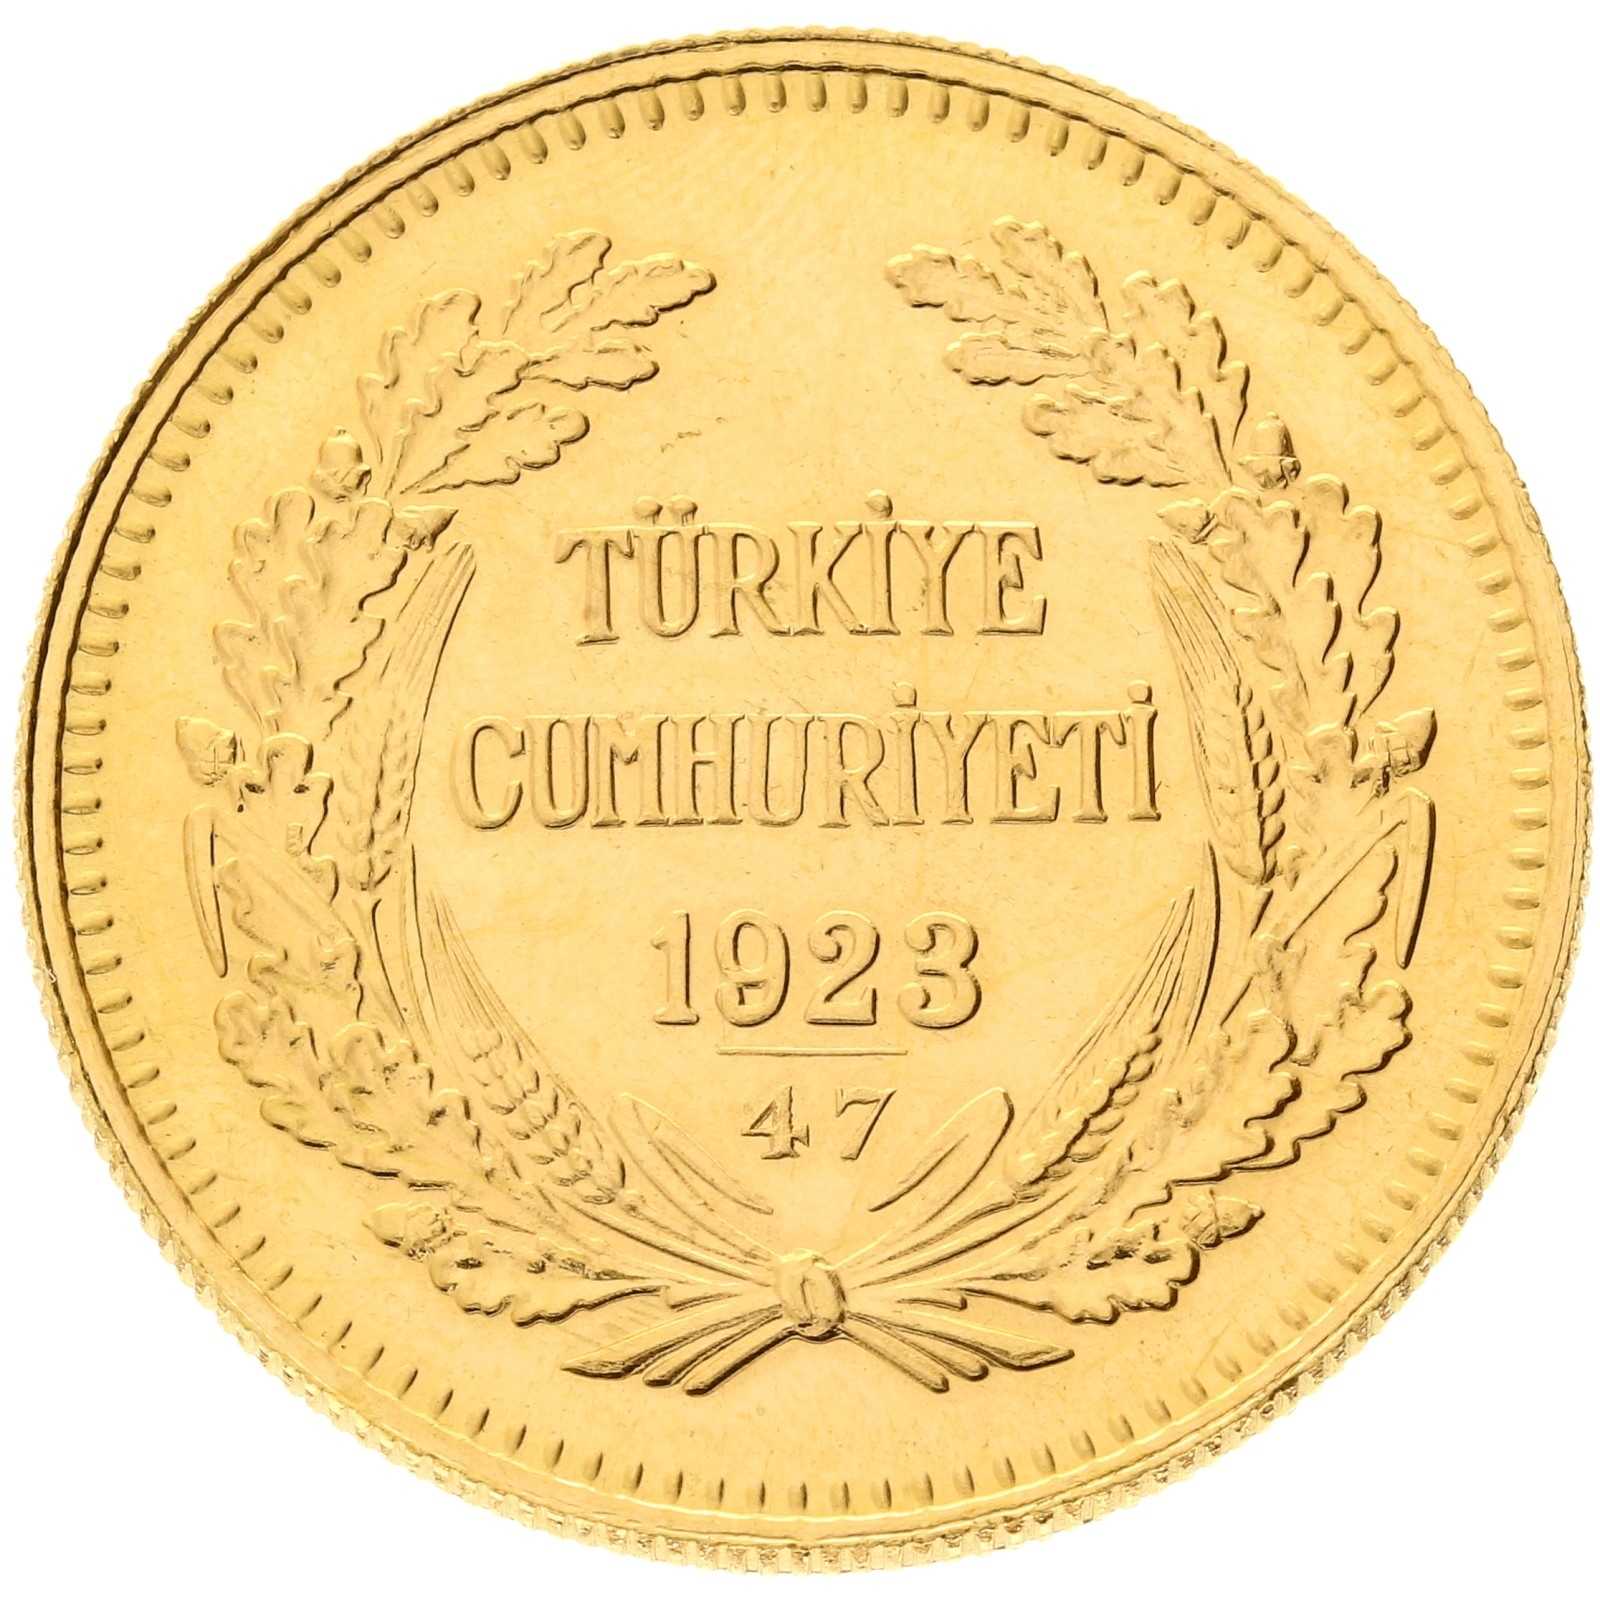 Turkey - 500 kurush - 1923/47 (1970)